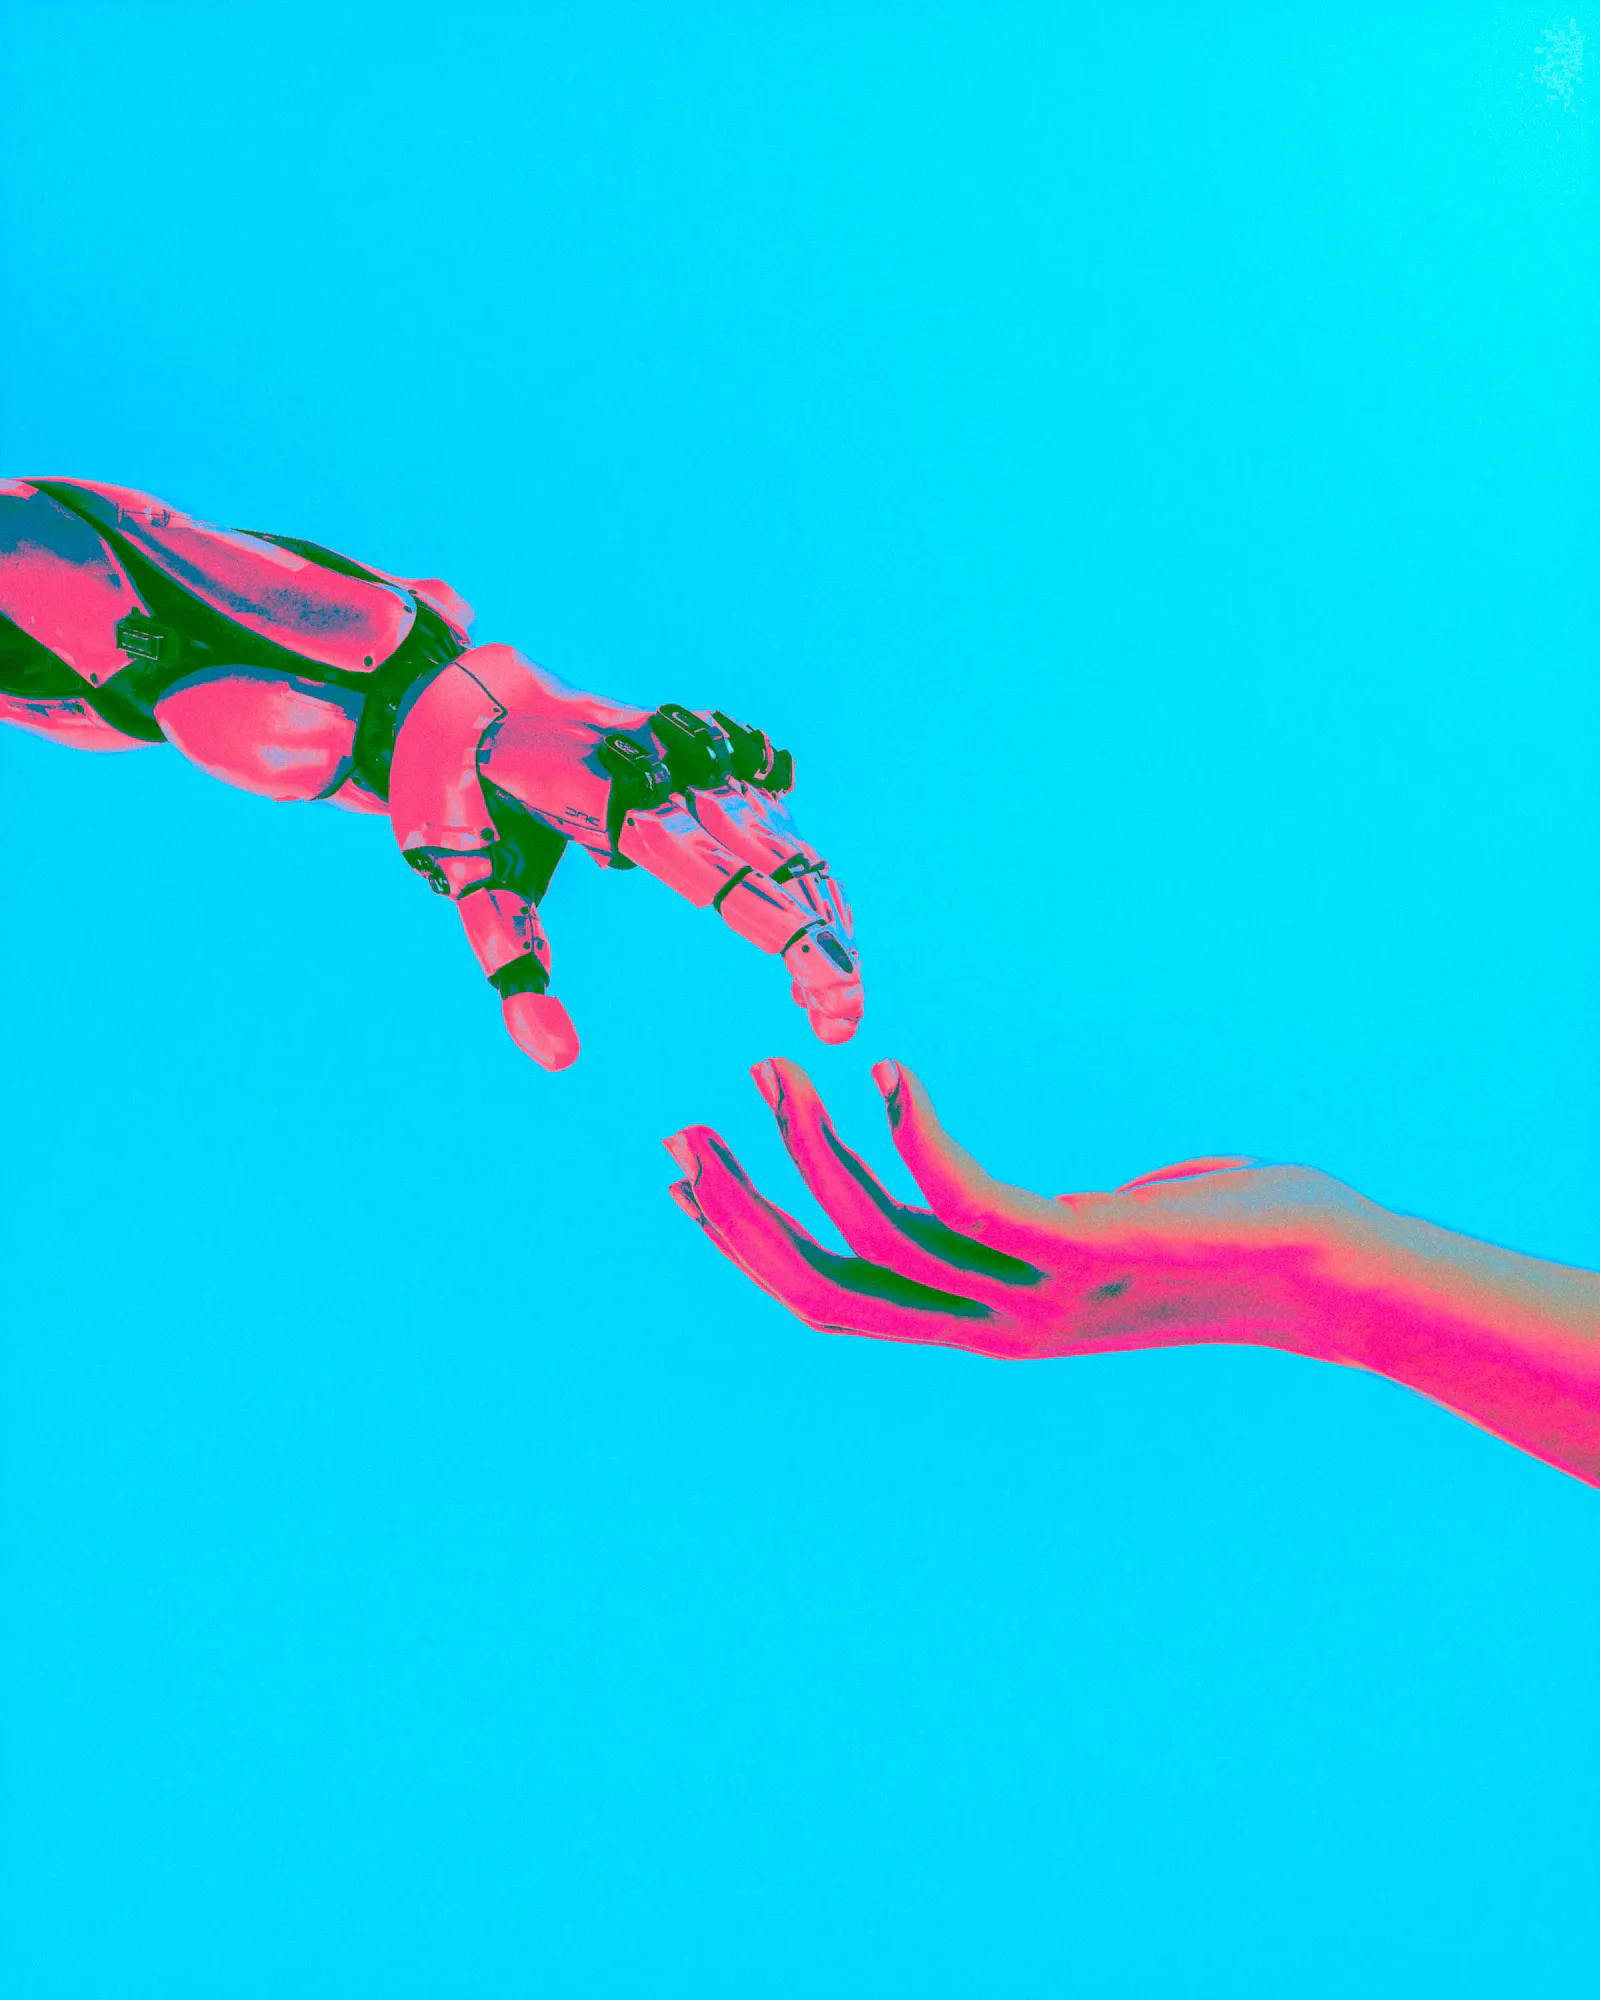 Zwei Hände nähern sich einander an, ähnlich wie bei Michelangelos "Die Erschaffung Adams". Beide Hände sind grün-pink. Eine ist menschlich, die andere gehört zu einem Roboter. Der Hintergrund ist blau.